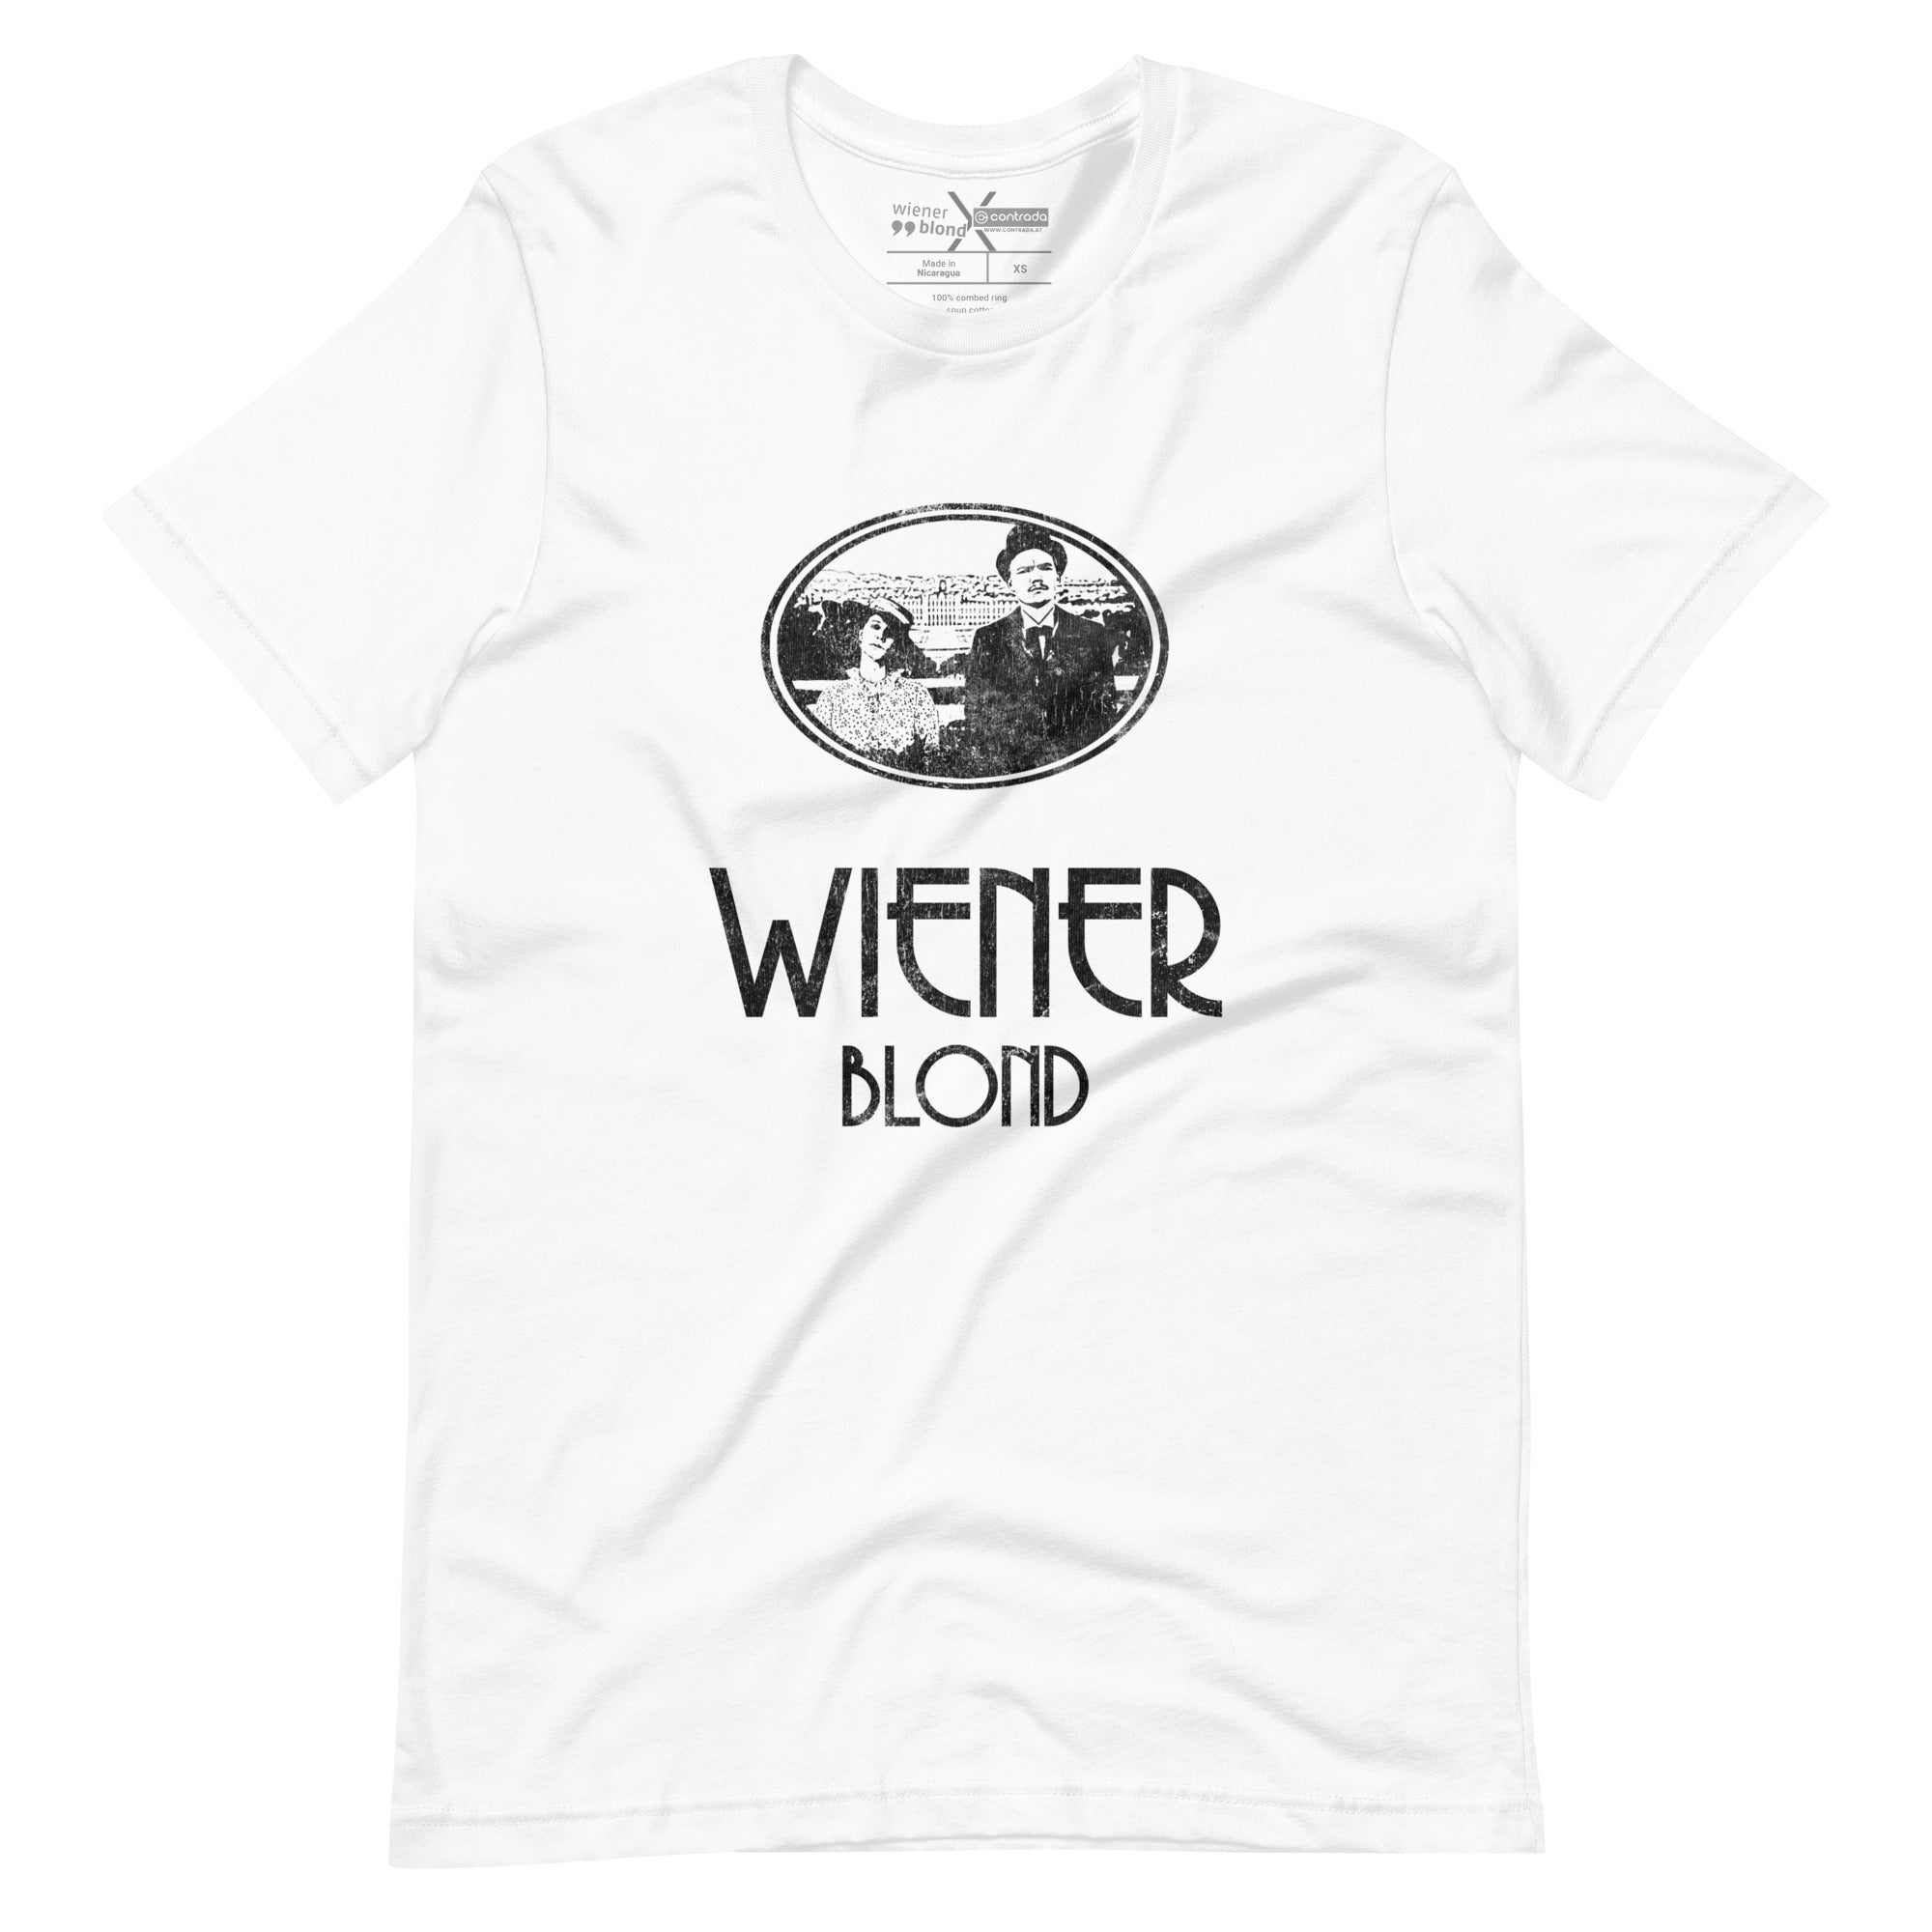 Wiener Blond, "Band Tee", Modern Basic T-Shirt